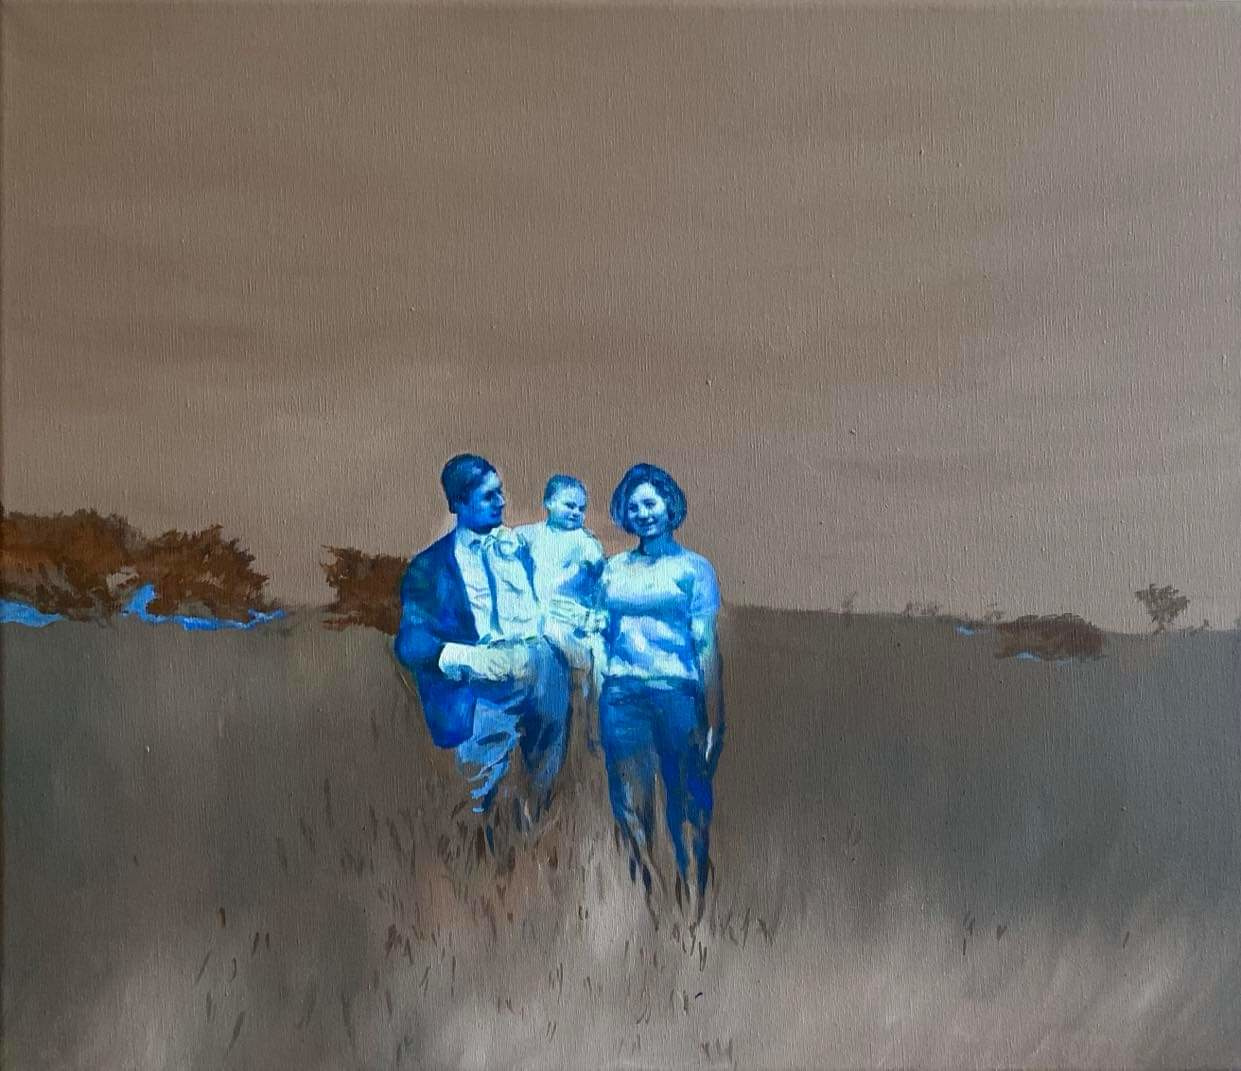 Rania Rangkou, Sunday, acrylics on canvas, 60 x 70 cm, 2021